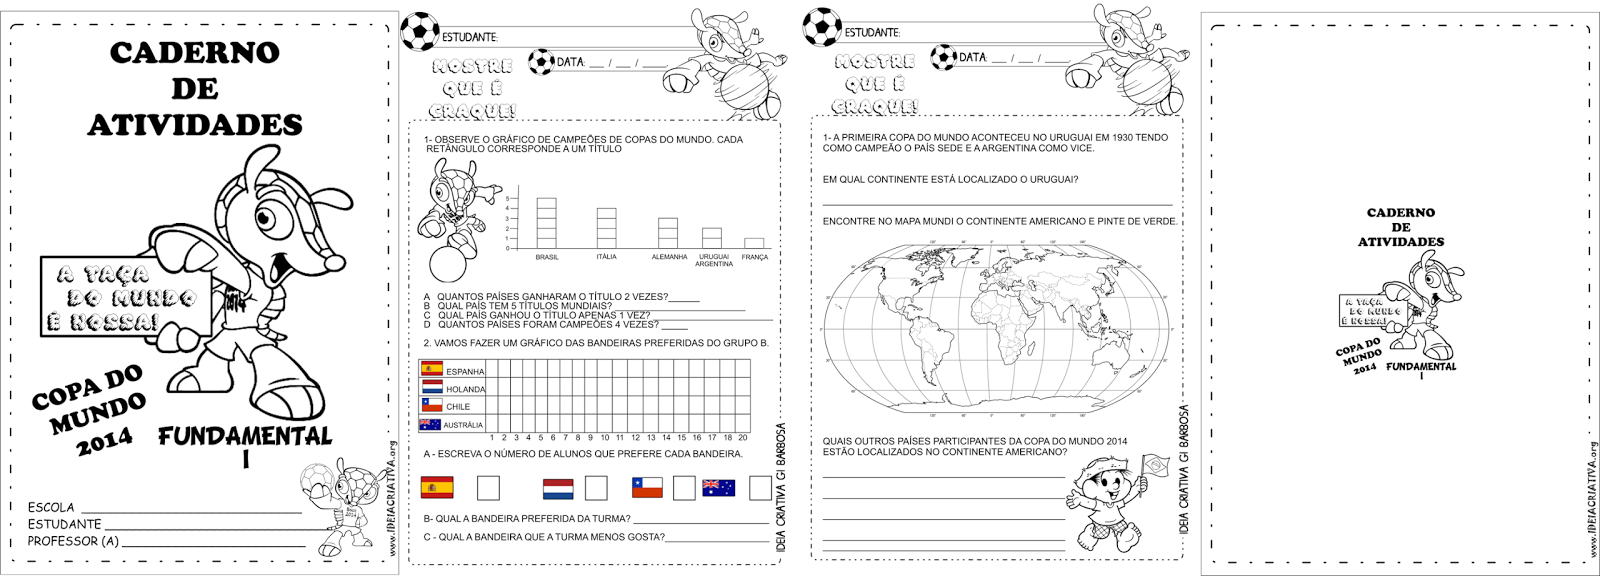 Caderno de Atividades Copa do Mundo 2014 Fundamental I